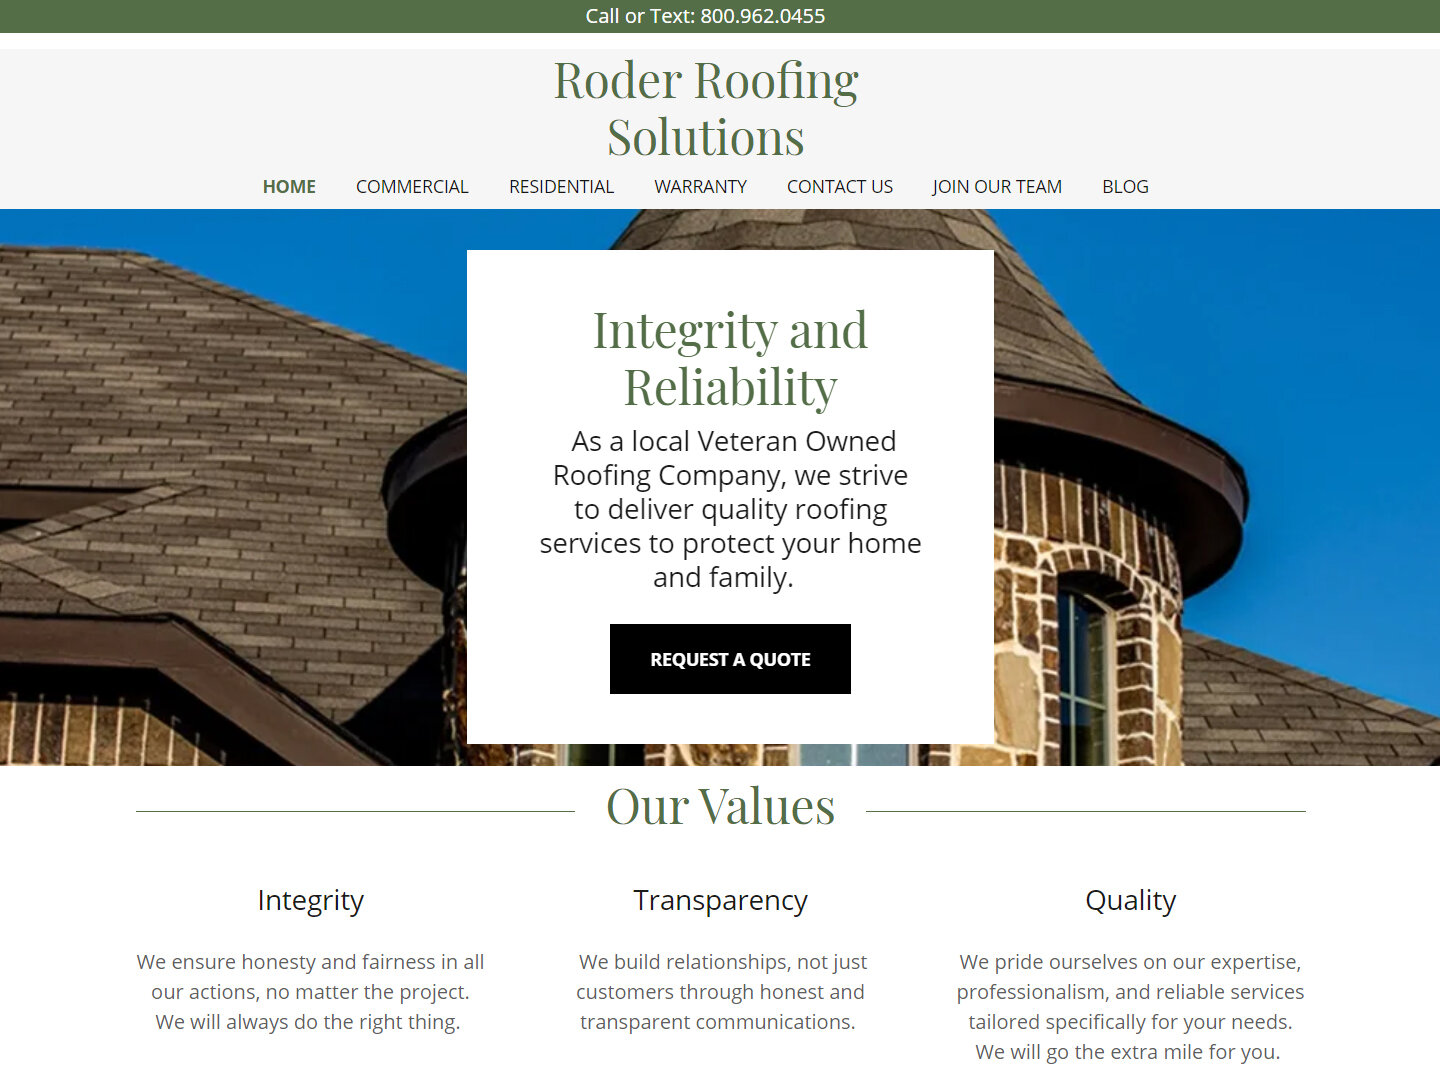 roder-roofing-solutions-lindsey-barker-marketing.jpg